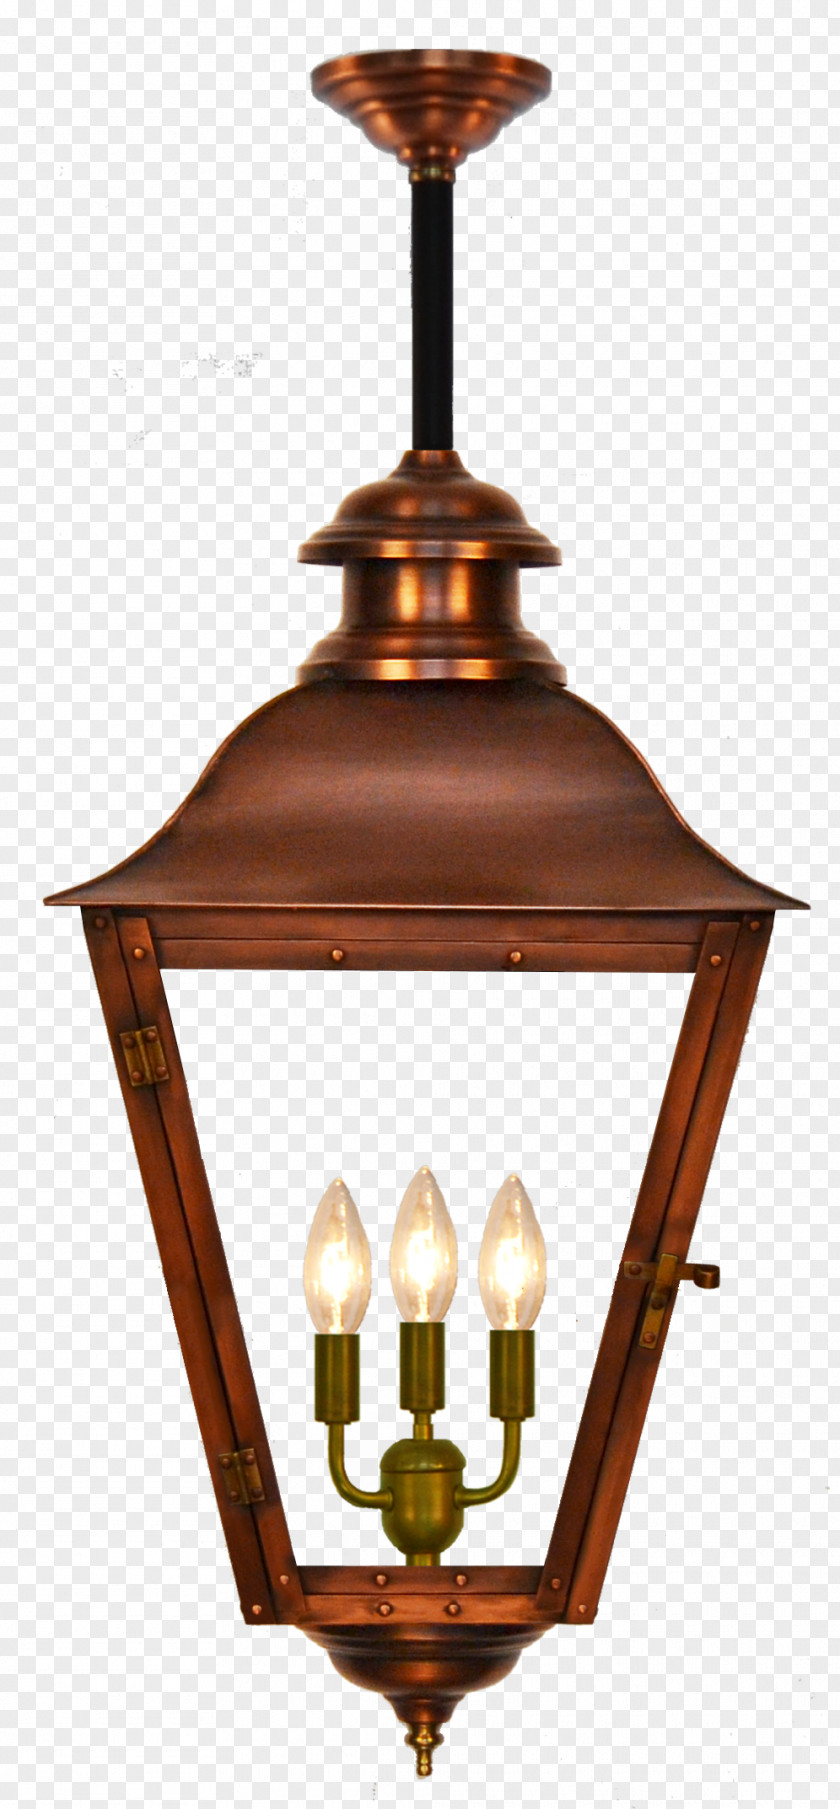 Selling Lanterns Lantern Gas Lighting Incandescent Light Bulb Burner PNG